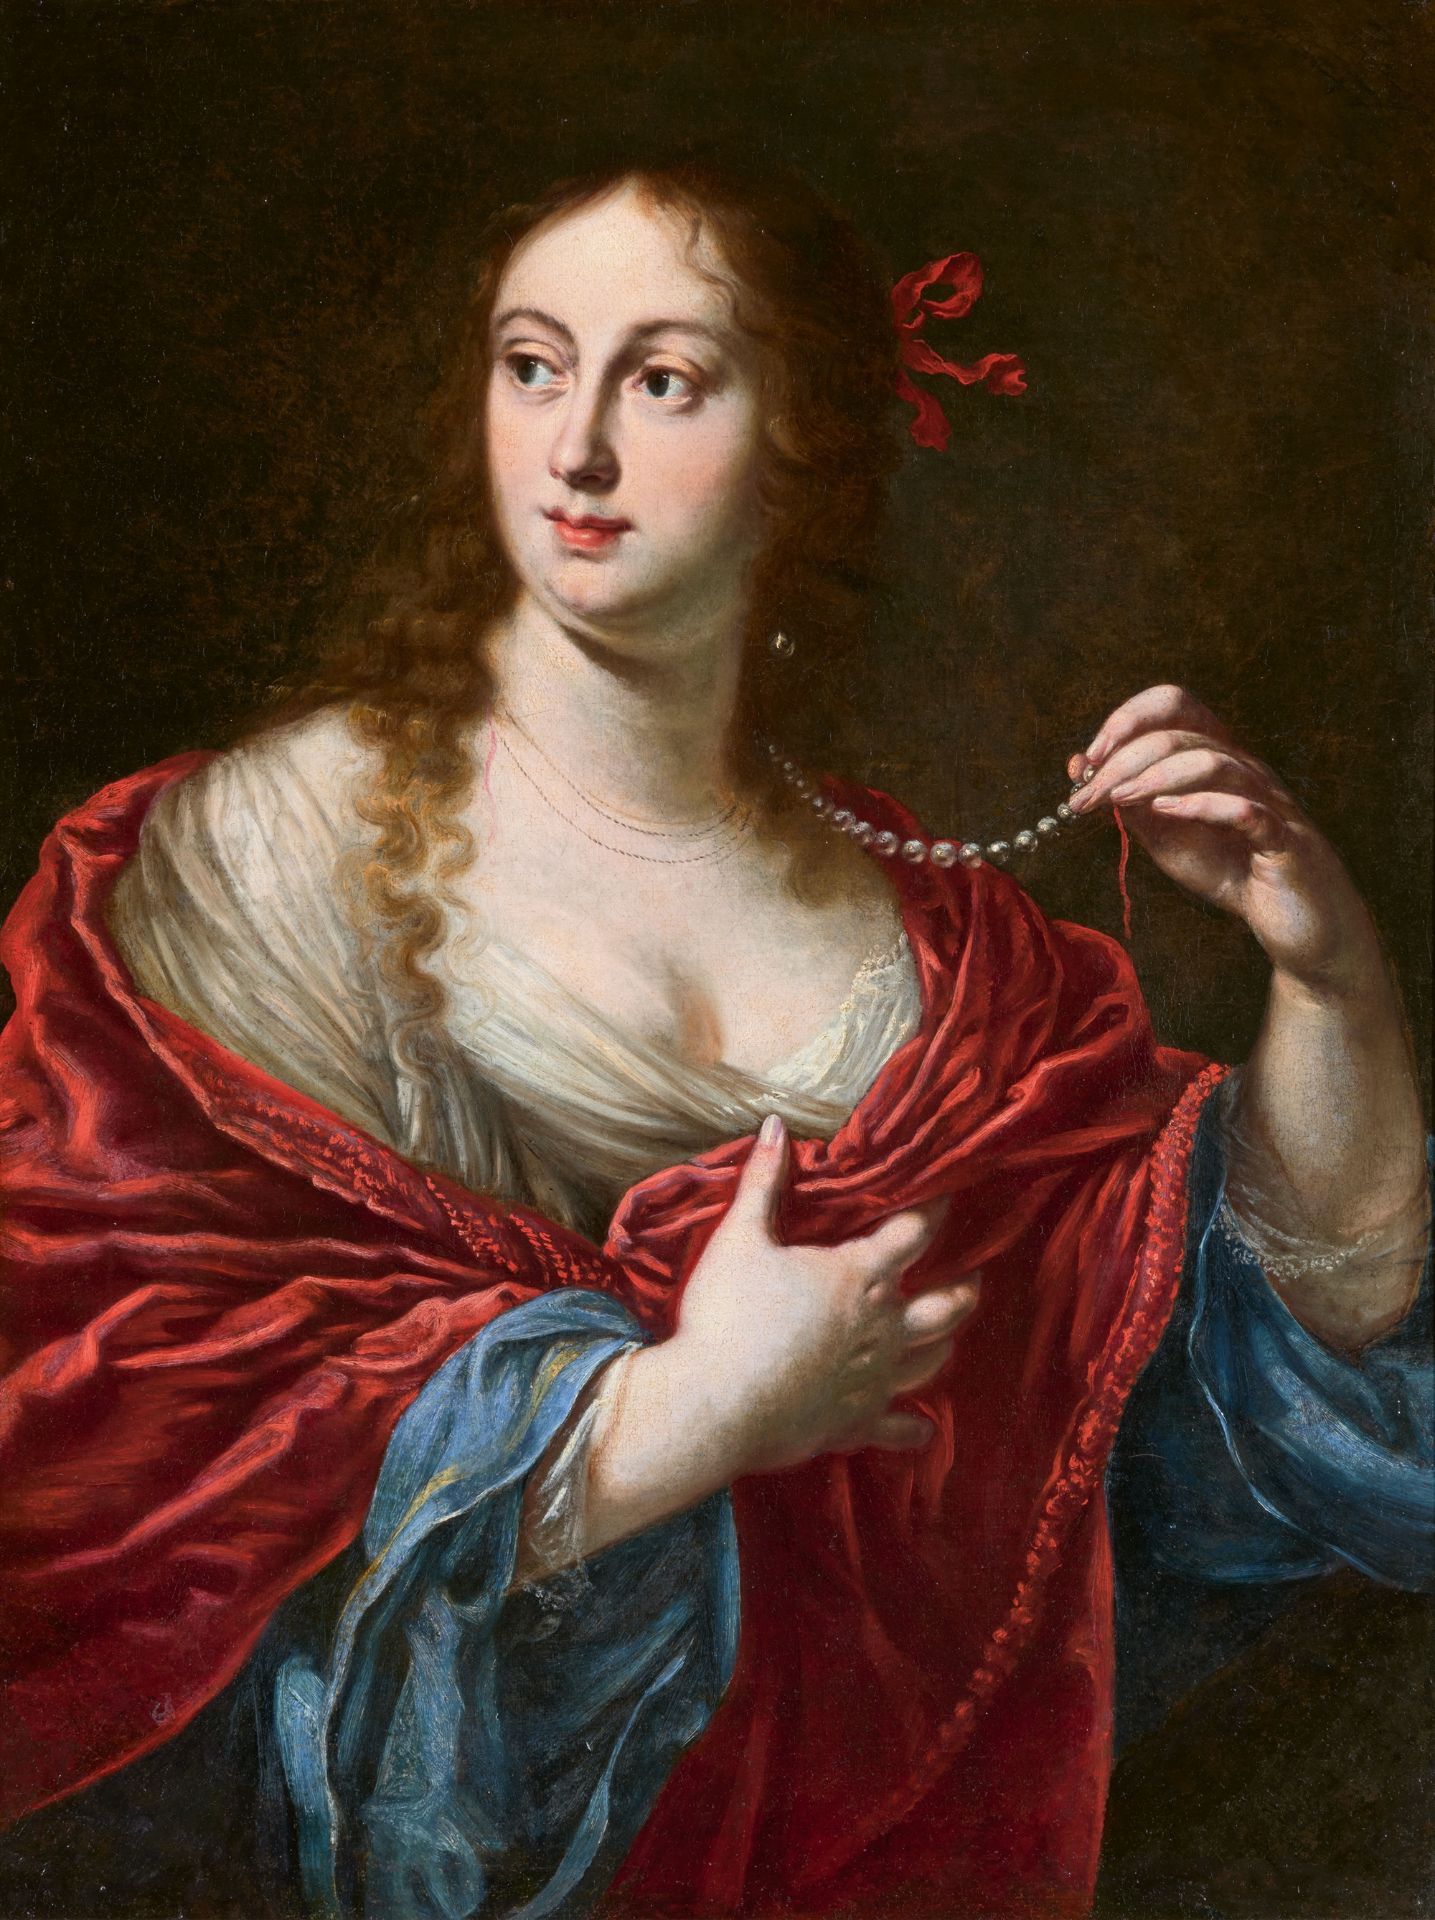 Justus Sustermans, Vittoria della Rovere, Großherzogin von Toskana (1622-1694), eine zerrissene Perl